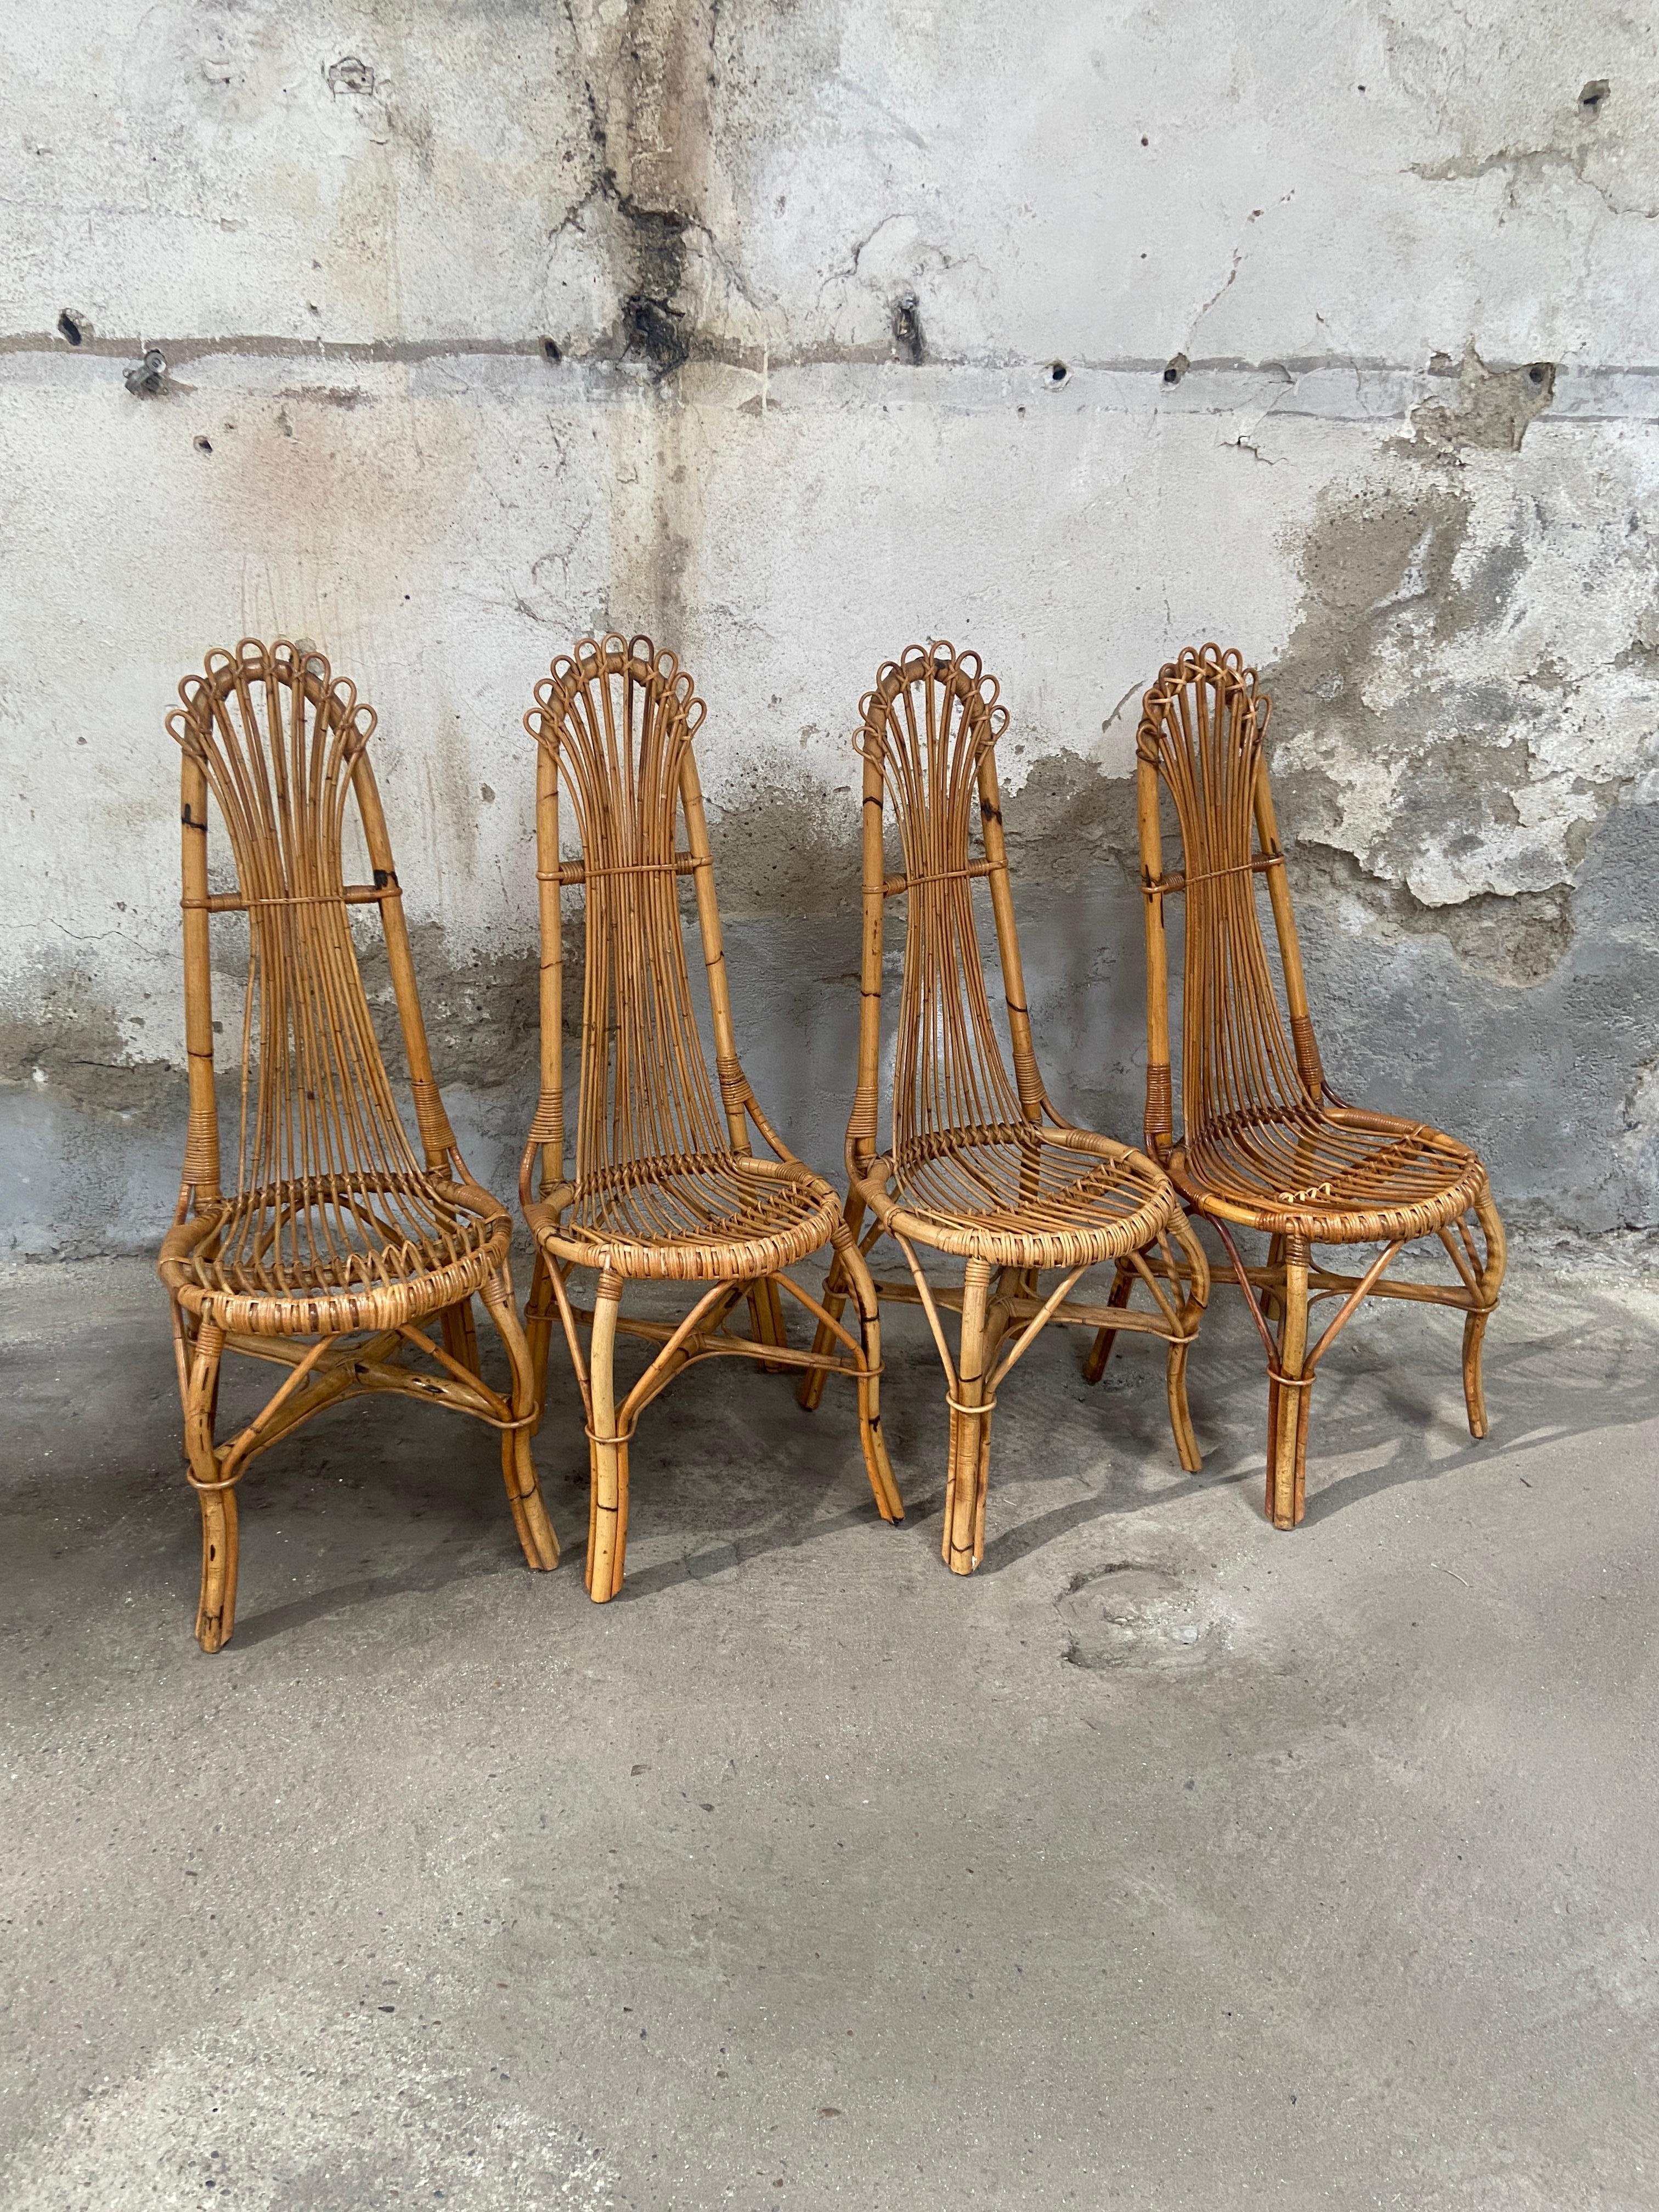 Ensemble de 4 chaises en bambou de la Côte d'Azur. Les chaises sont en très bon état, avec une belle patine due à l'âge et à l'utilisation.